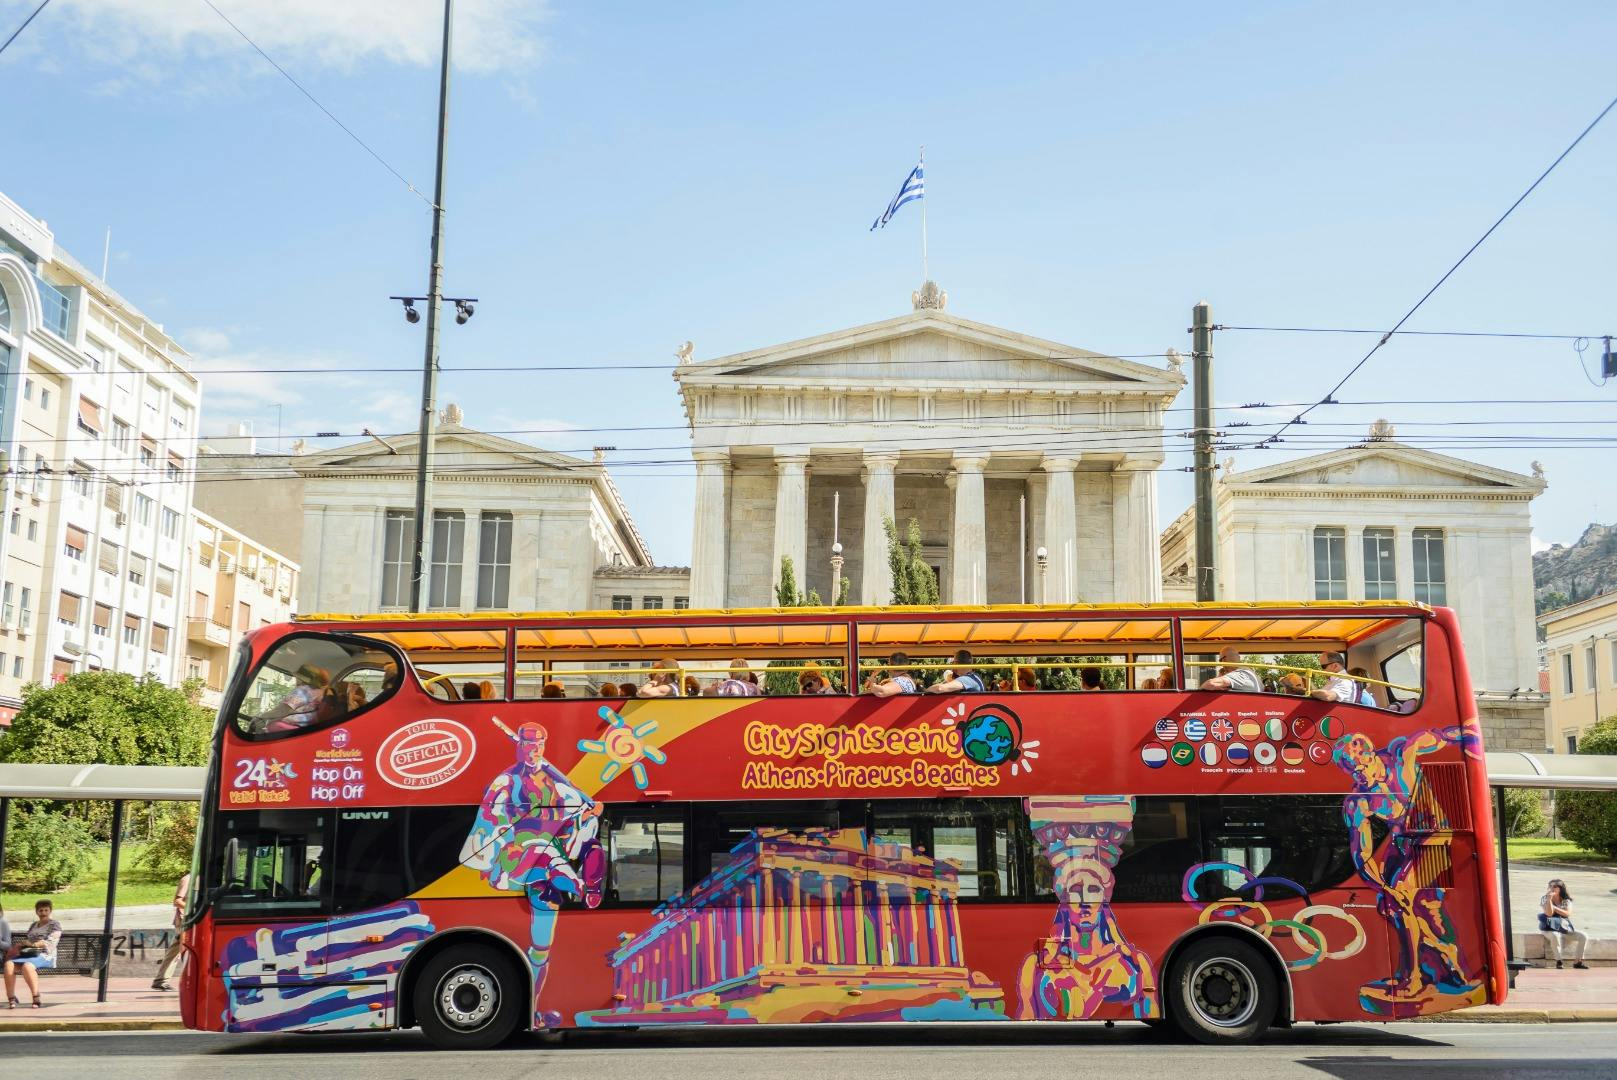 Tour en autobús turístico City Sightseeing por Atenas